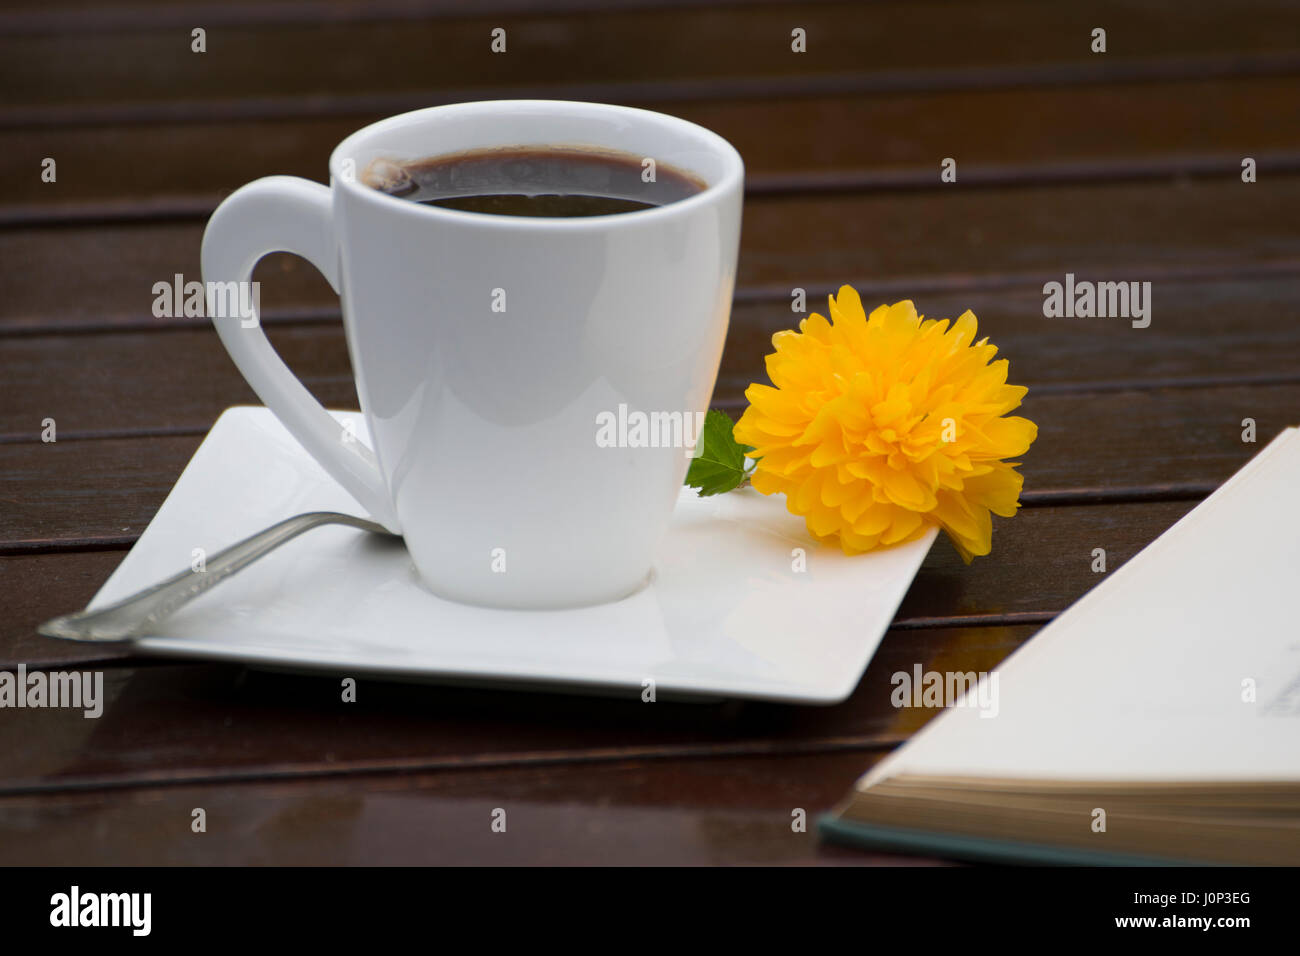 Eine Tasse schwarzer Kaffee mit einer schönen Blume und eine silberne Teelöffel auf der Untertasse, neben einem offenen Buch auf einer hölzernen Tisch, draussen. Stockfoto